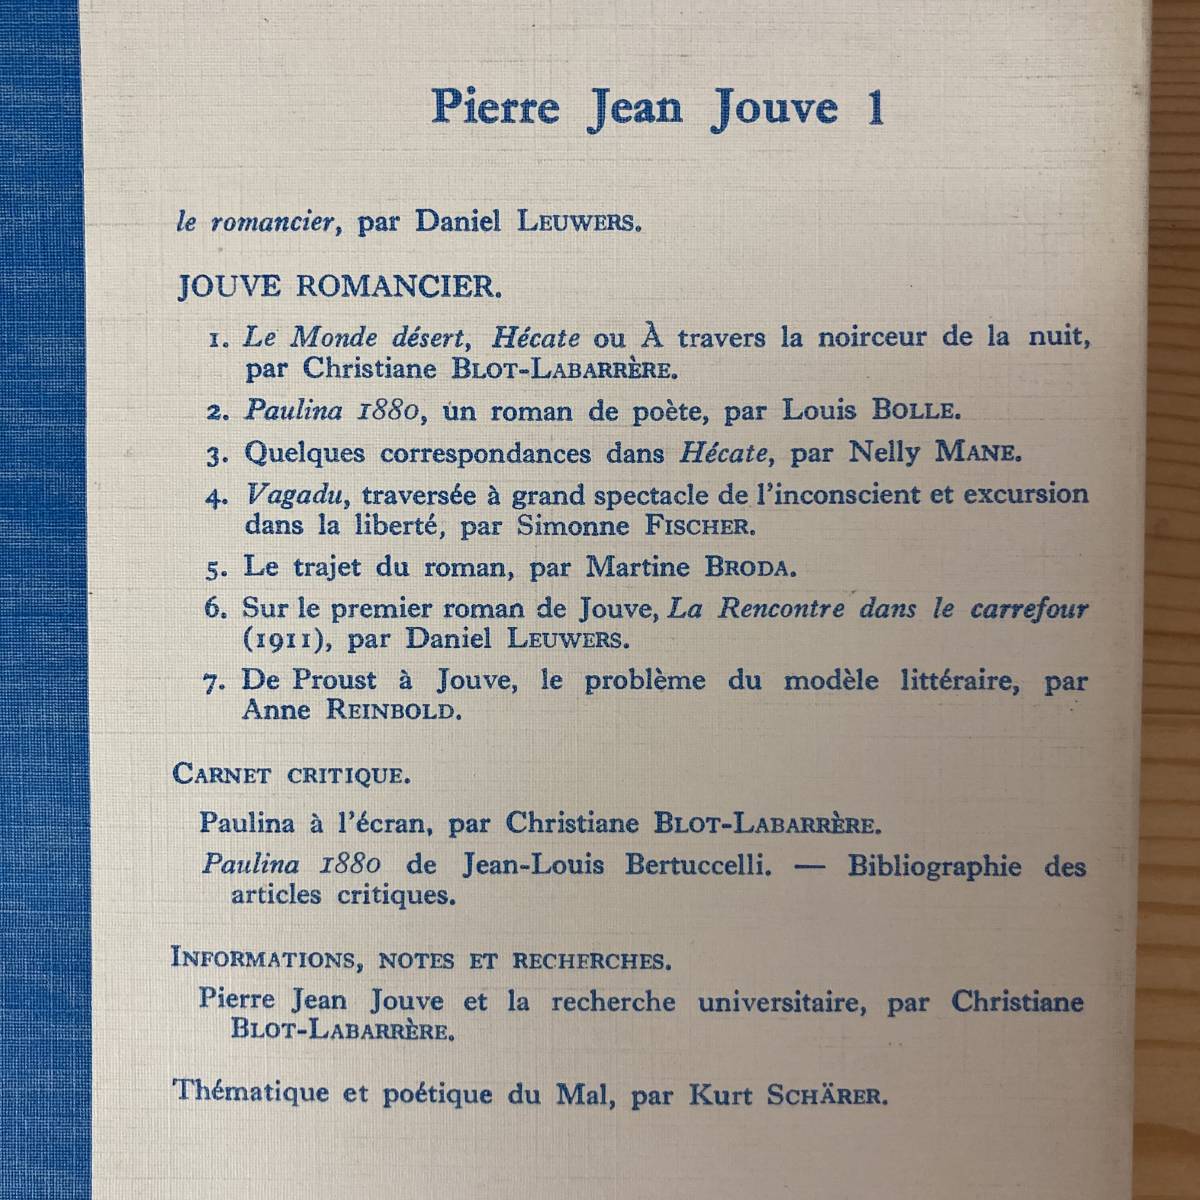 【仏語洋書】PIERRE JEAN JOUVE 1 Jouve romancier / Daniel Leuwers（監）【ピエール・ジャン・ジューヴ】_画像3